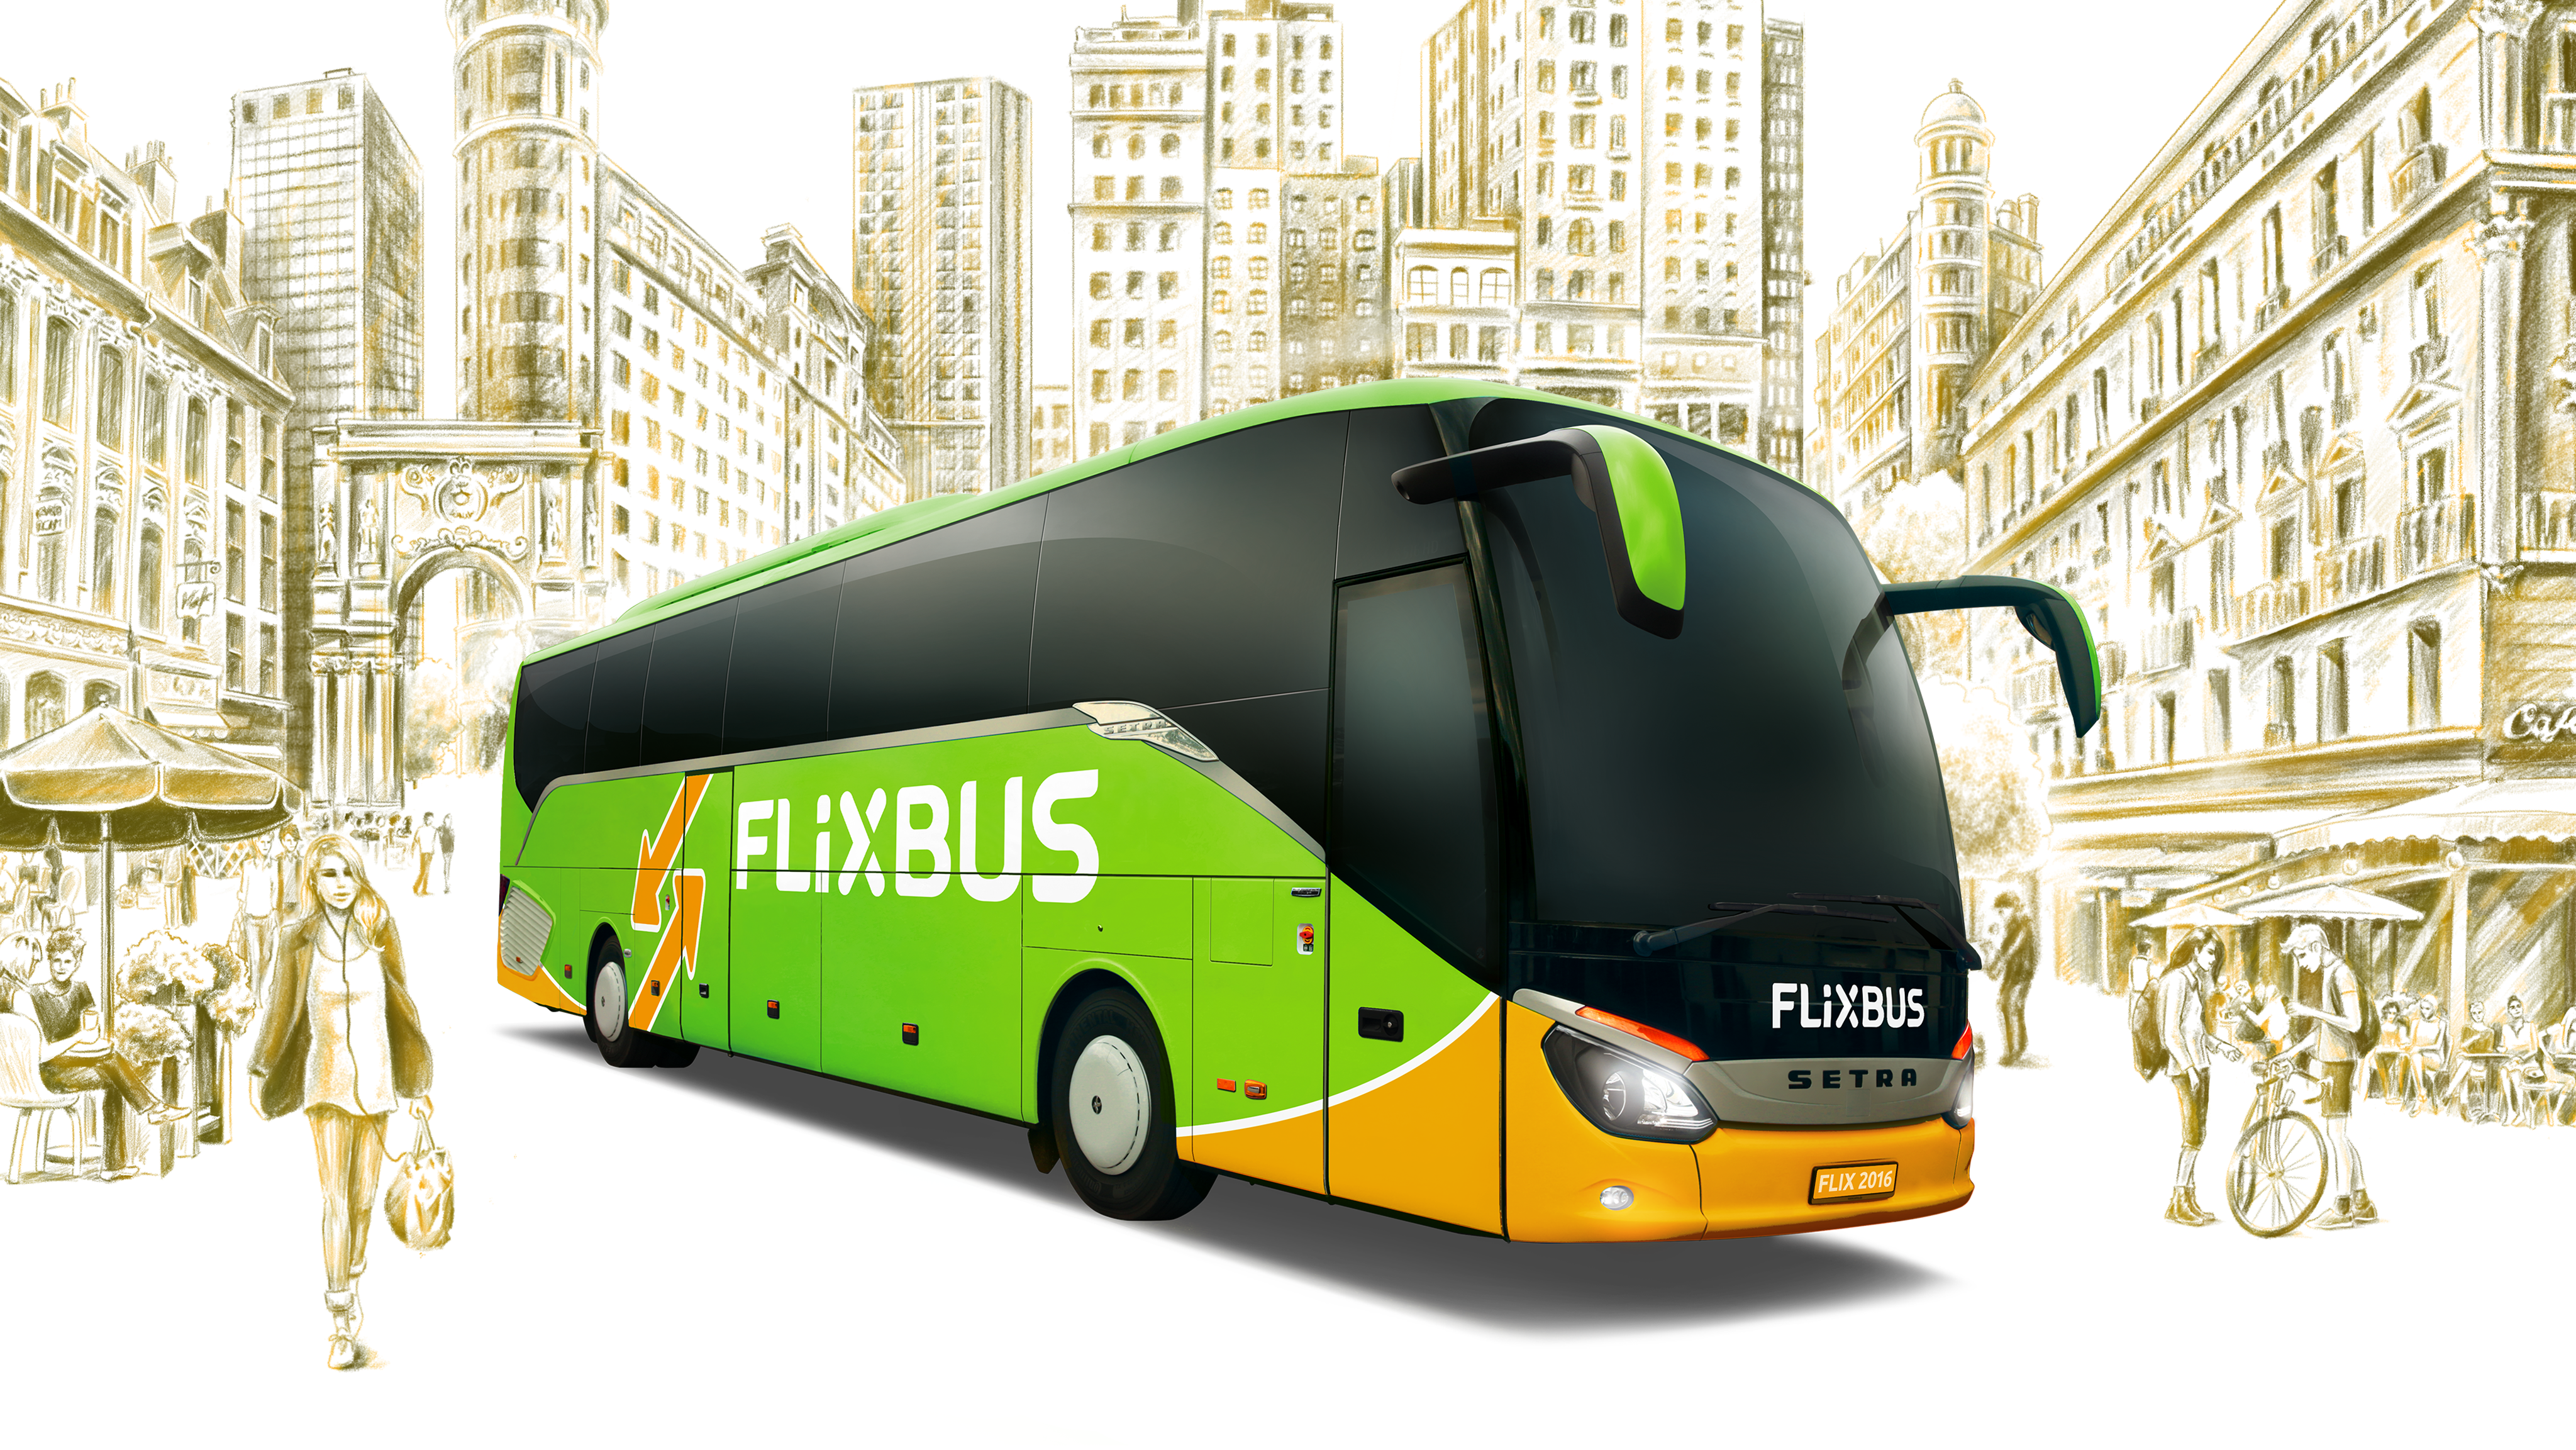 Résultats du jeu-concours Flixbus